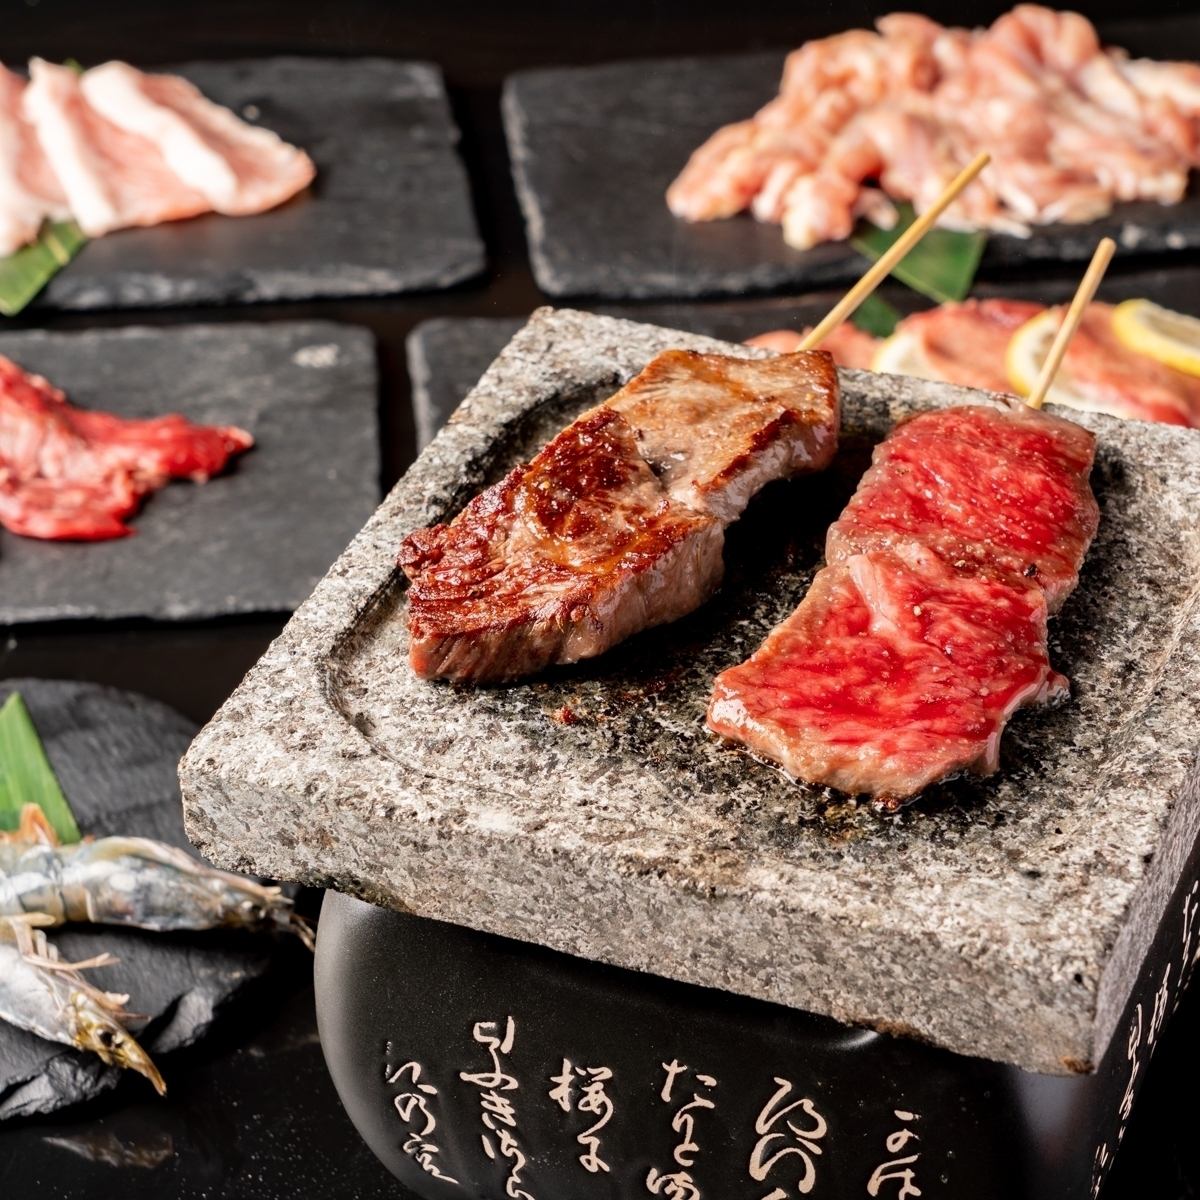 距離千葉站很近!提供熔岩烤肉、肉生魚片、肉壽司等美味肉食的肉食餐廳。